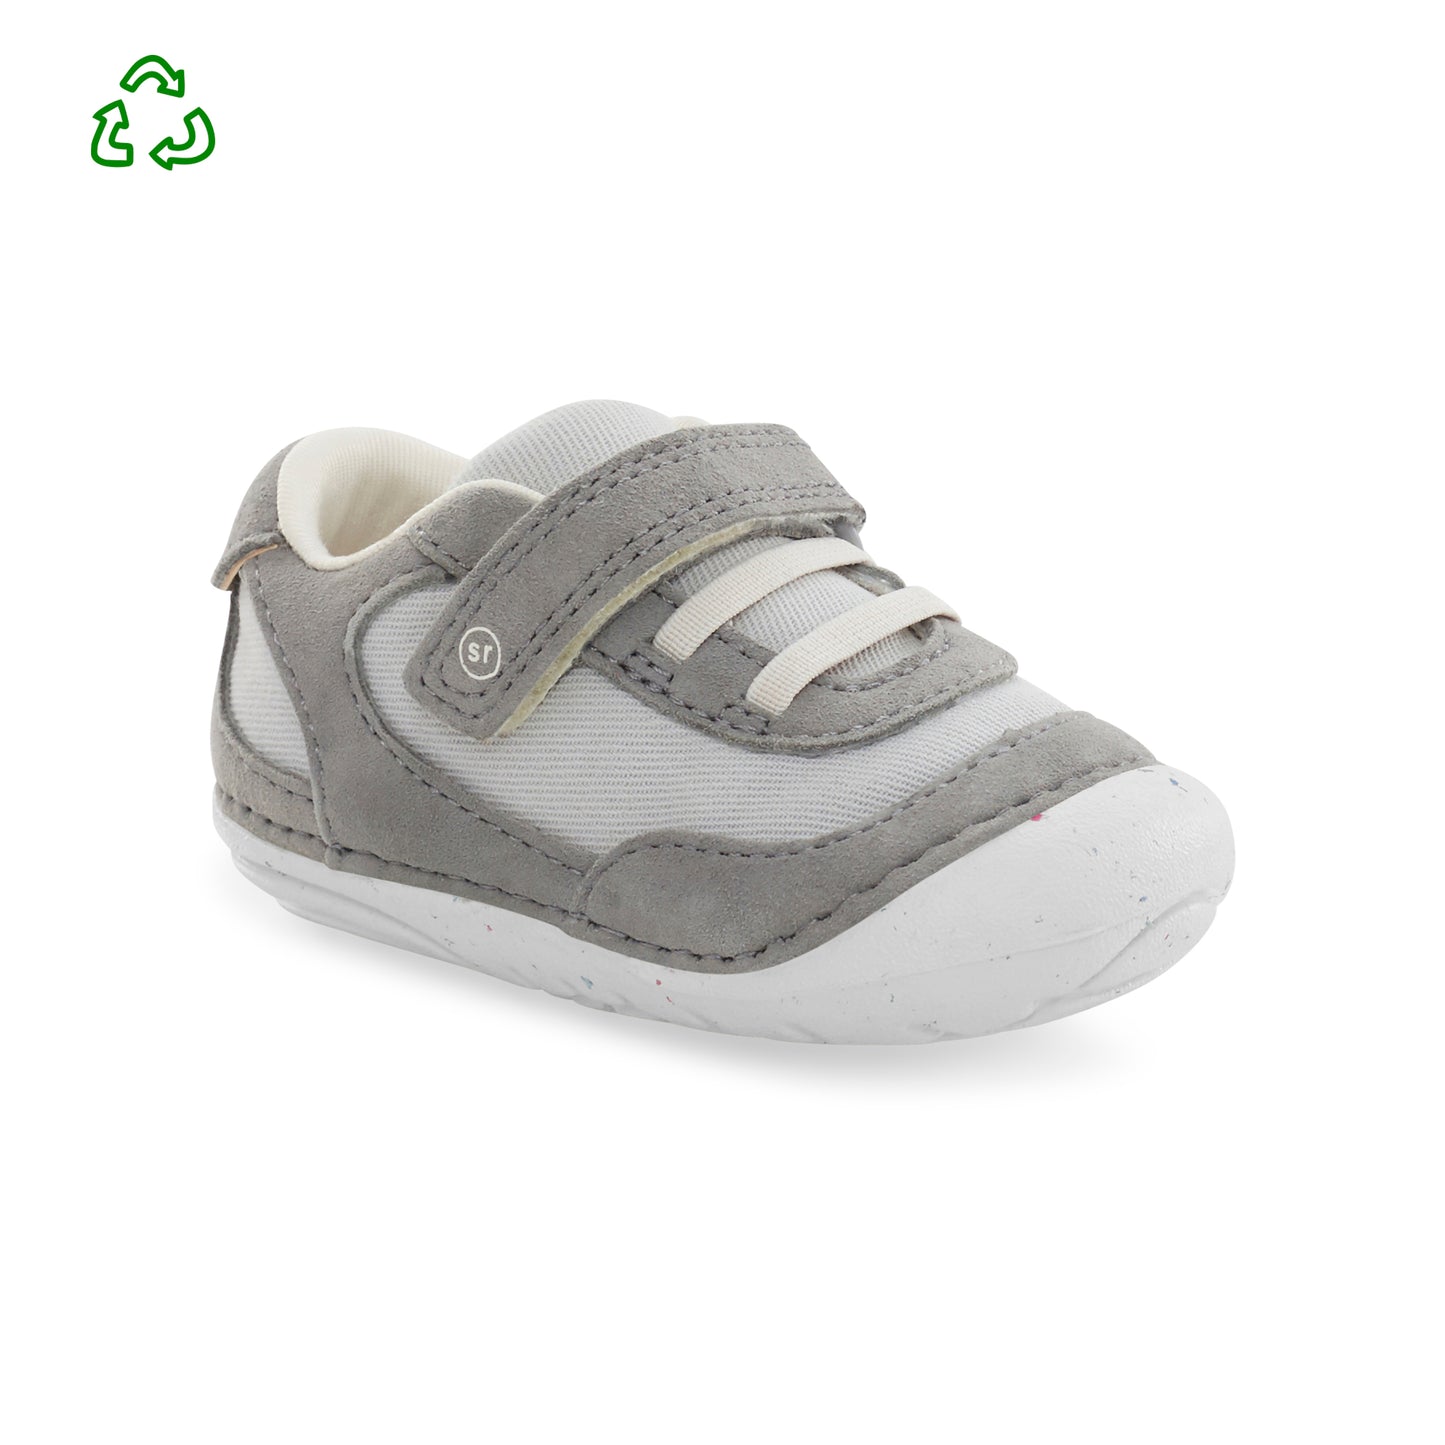 soft-motion-sprout-sneaker-littlekid-light-grey__Light Grey_1